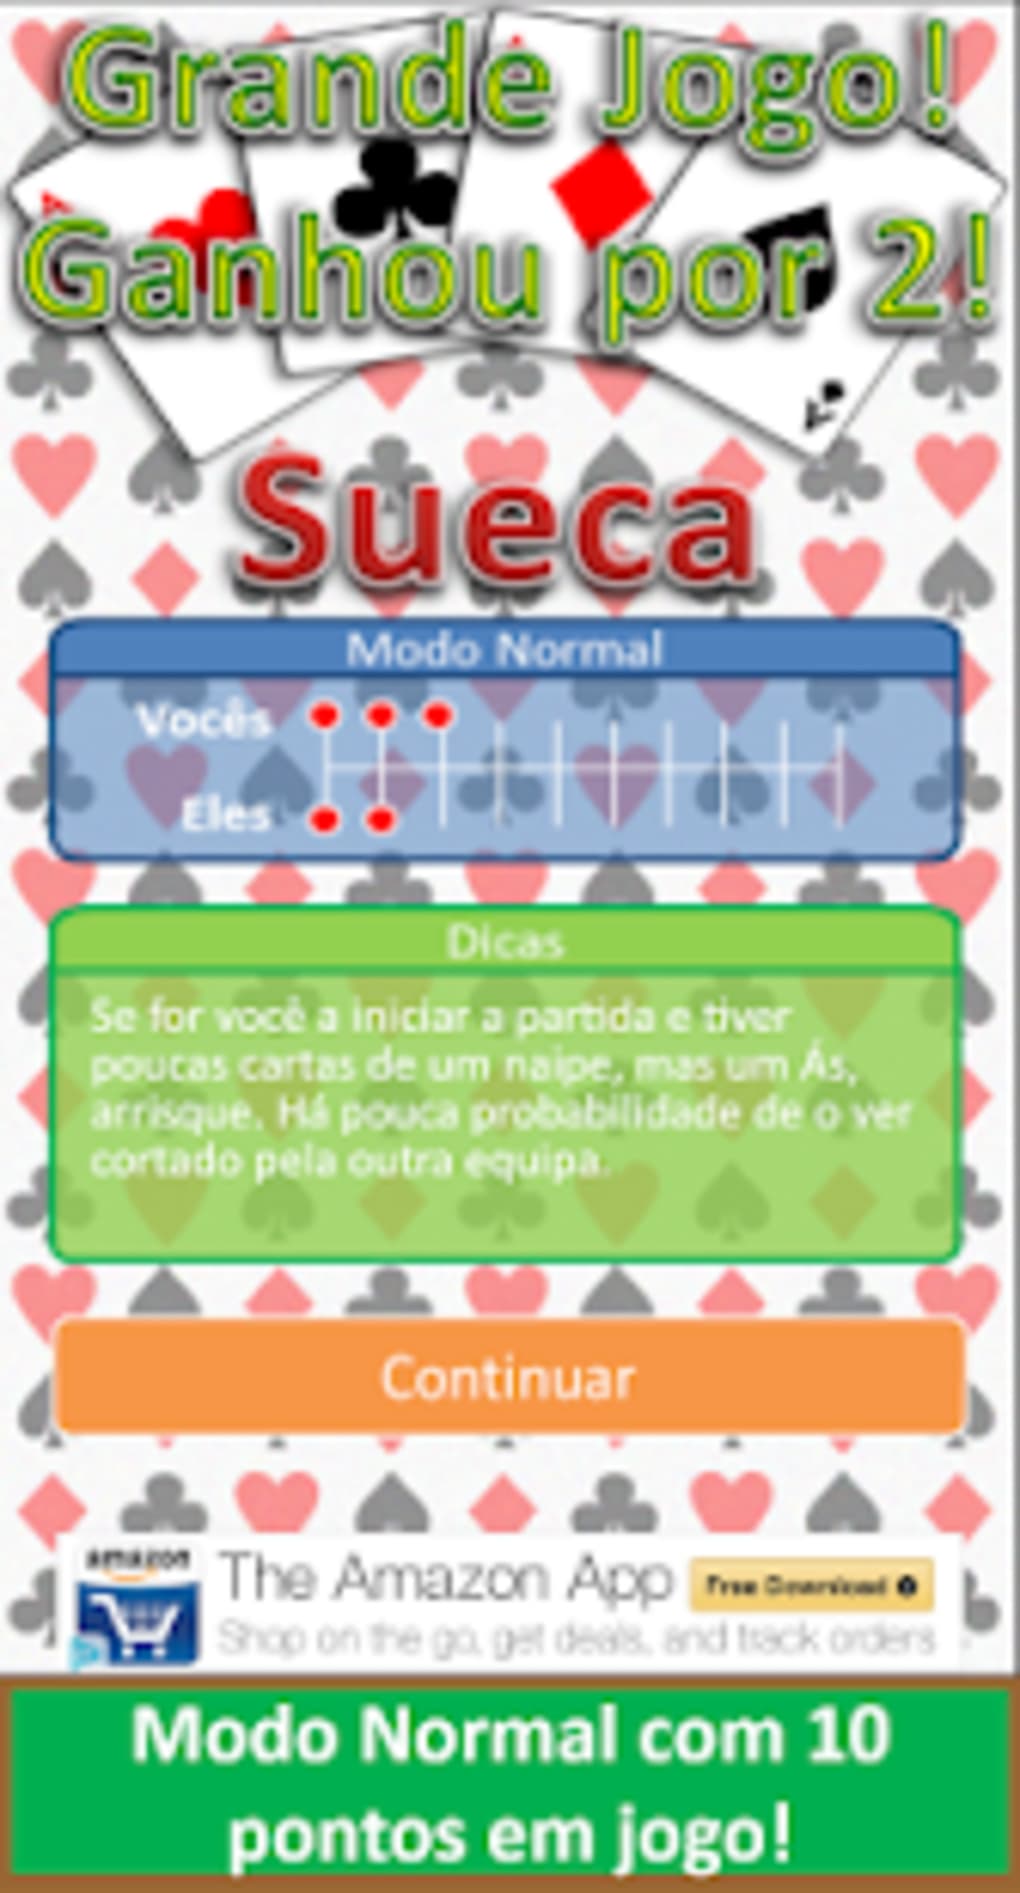 Sueca Online: Jogo de Cartas Português - Microsoft Apps